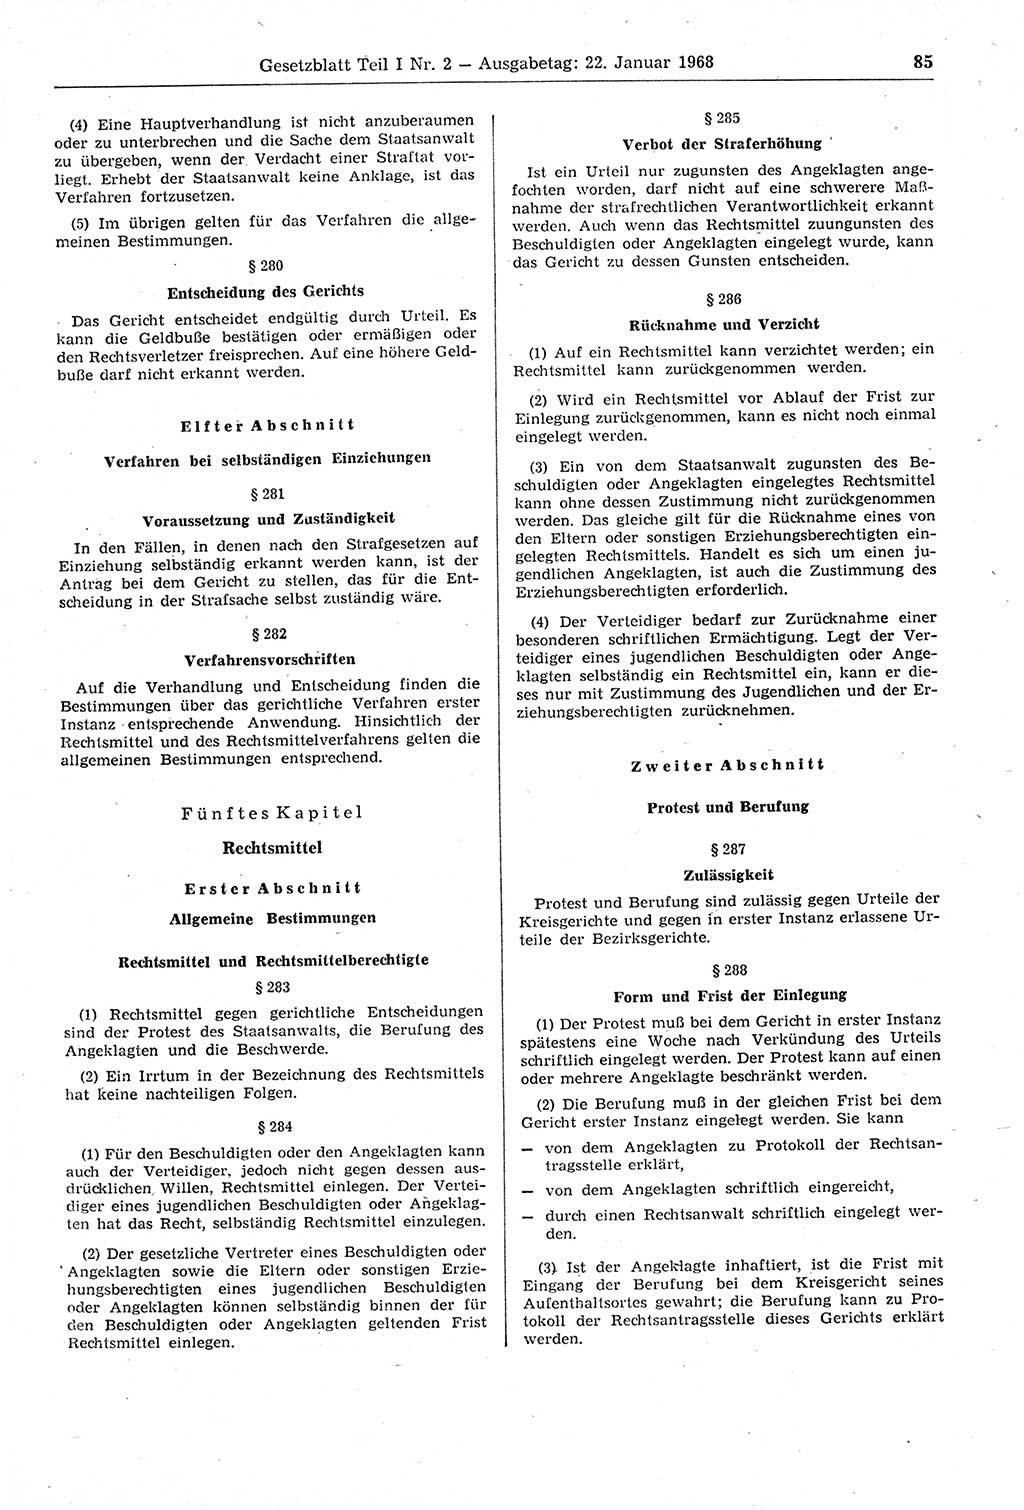 Gesetzblatt (GBl.) der Deutschen Demokratischen Republik (DDR) Teil Ⅰ 1968, Seite 85 (GBl. DDR Ⅰ 1968, S. 85)